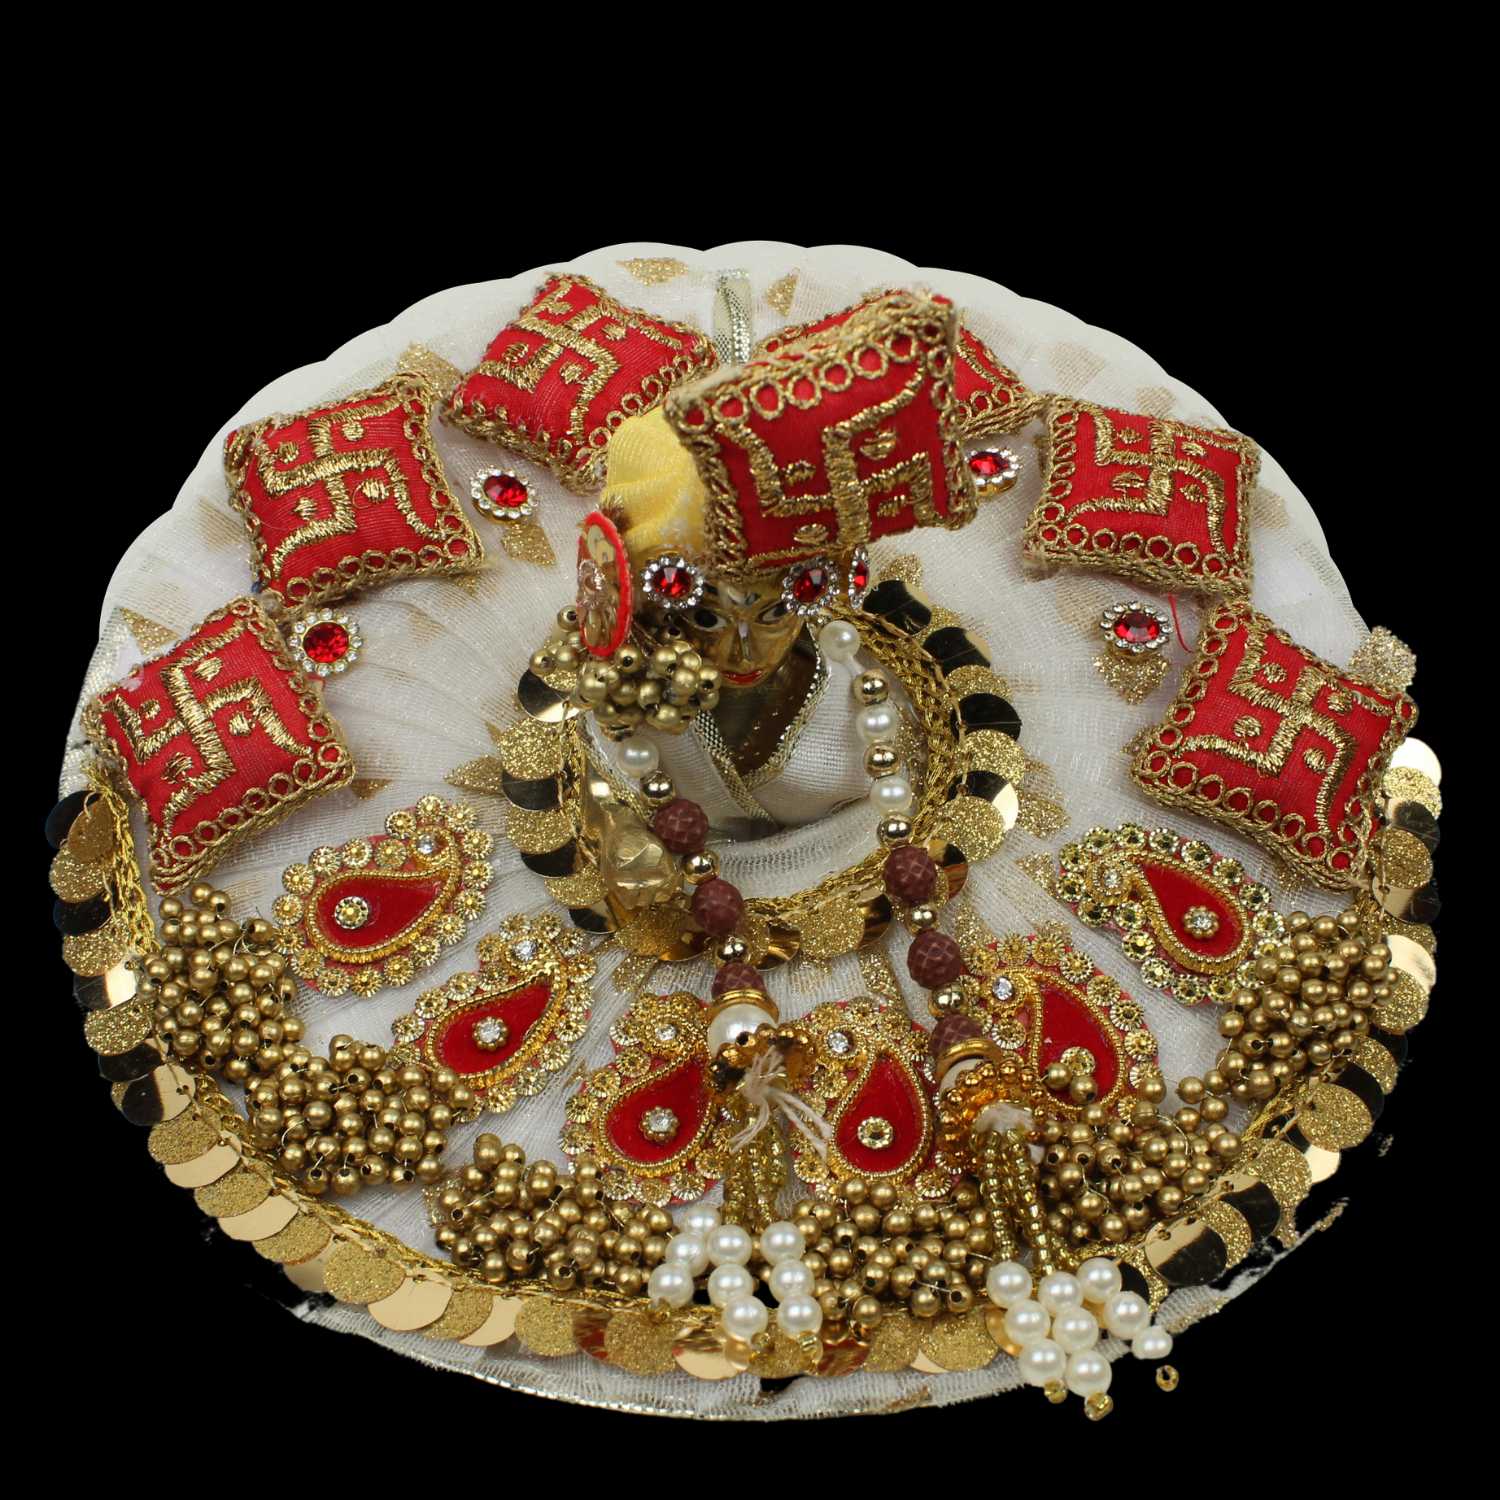 Laddu Gopal Dresses